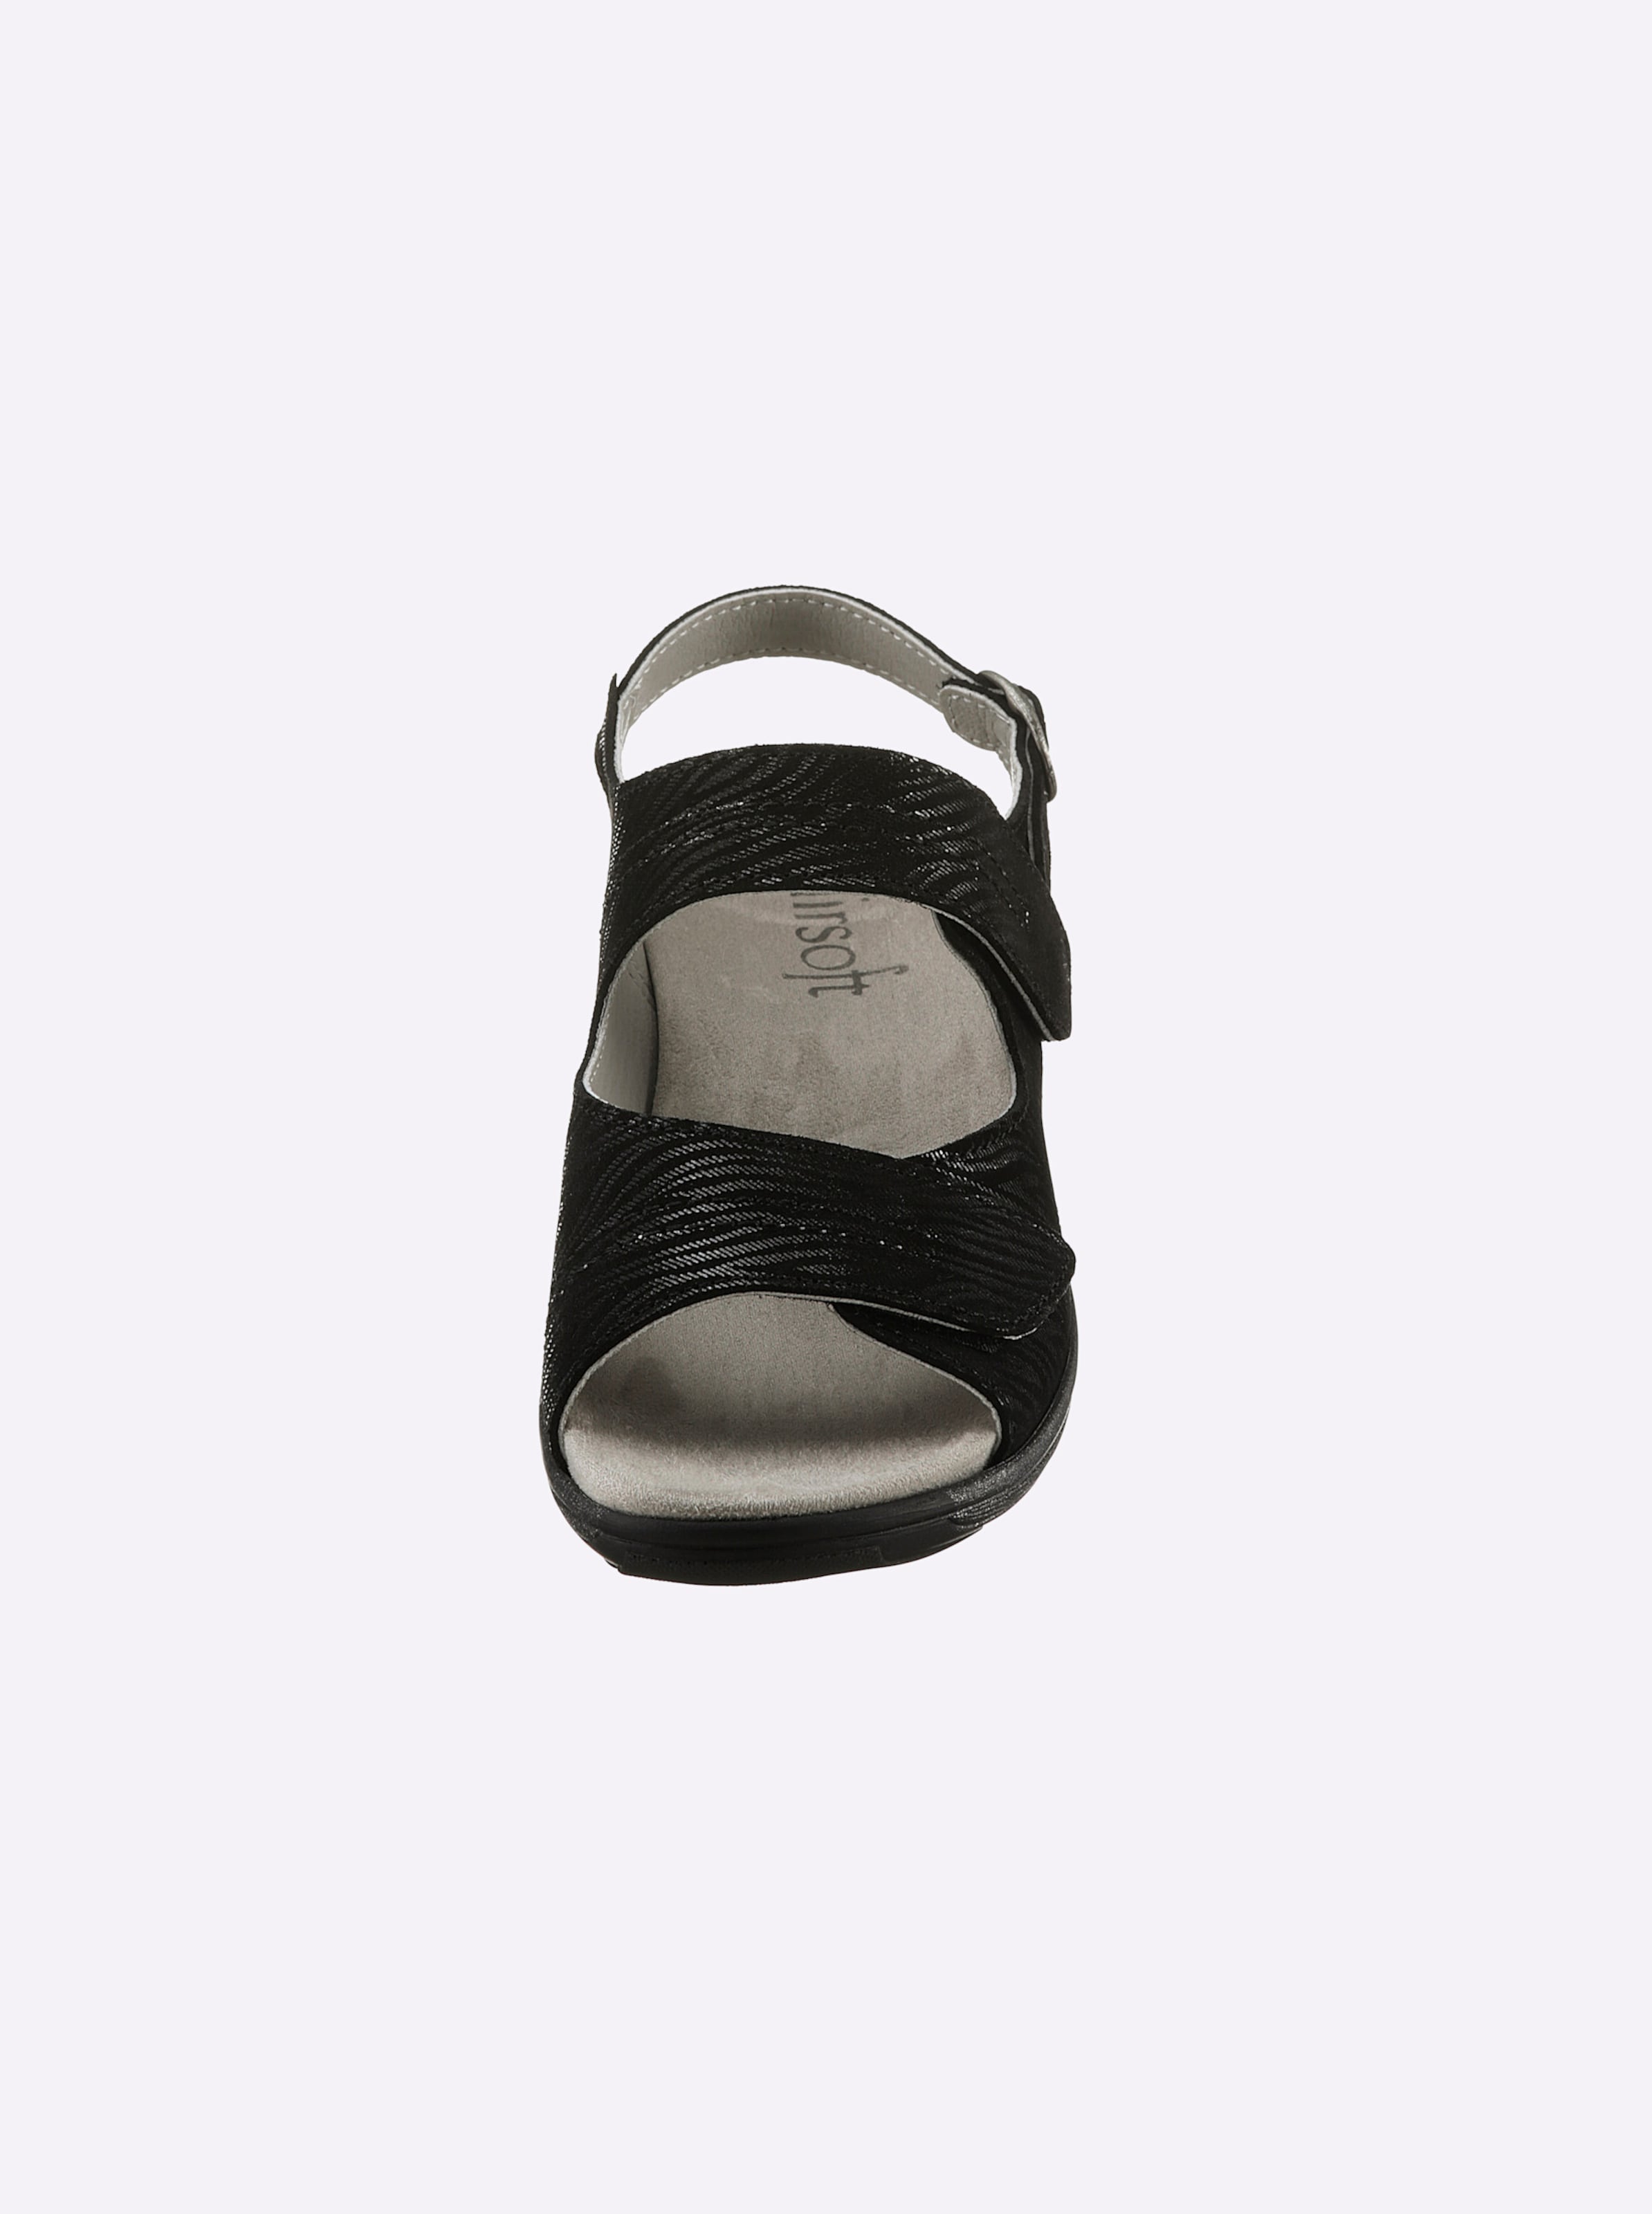 LED Innen günstig Kaufen-Sandalette in schwarz von airsoft comfort+. Sandalette in schwarz von airsoft comfort+ <![CDATA[Ganz im Trend und auch noch super bequem! Sandalette von airsoft comfort+ mit geprägtem, edel schimmerndem Zebra-Muster auf hochwertigem Glattleder. Innen aus